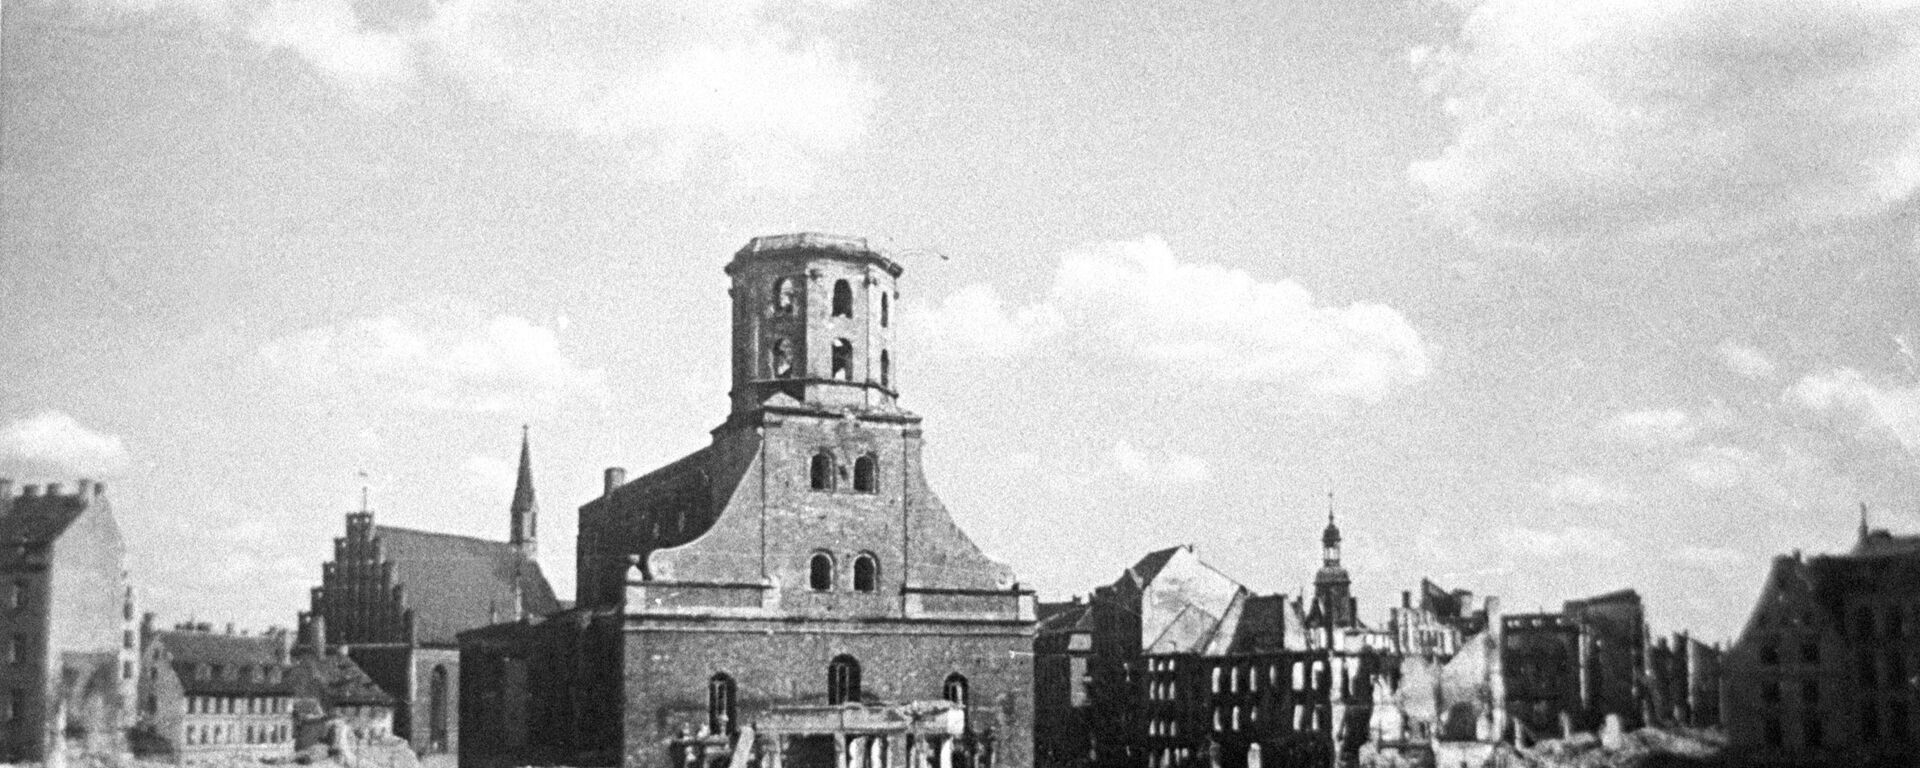 Ратушная площадь в Риге после отступления фашистов, октябрь 1944 года - Sputnik Латвия, 1920, 25.06.2021